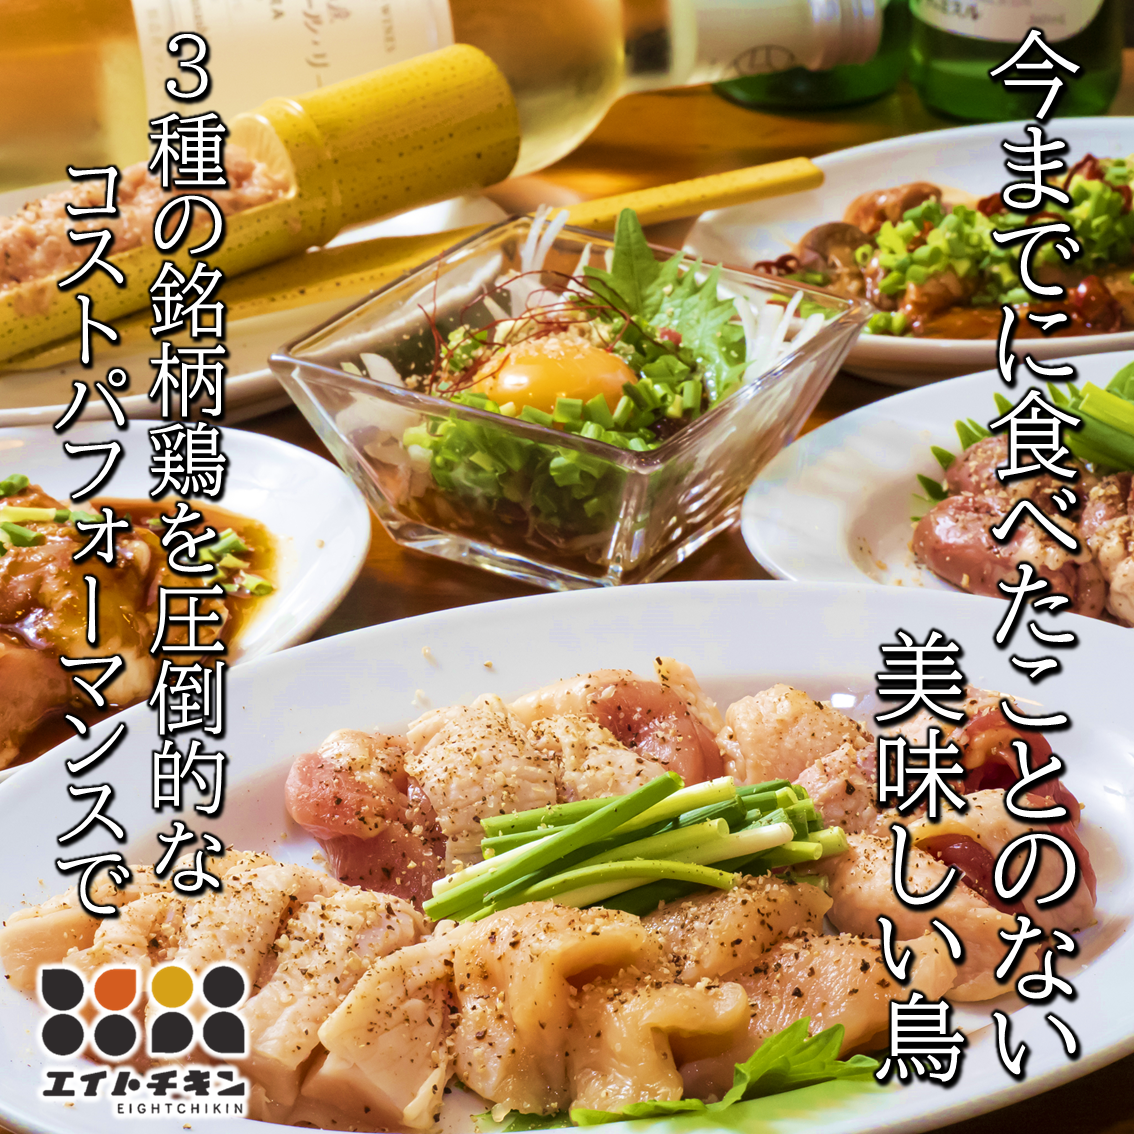 兵库县产的美味佳肴～给外出就餐带来乐趣～提供种类丰富的鸡肉烤肉和鸡肉料理♪